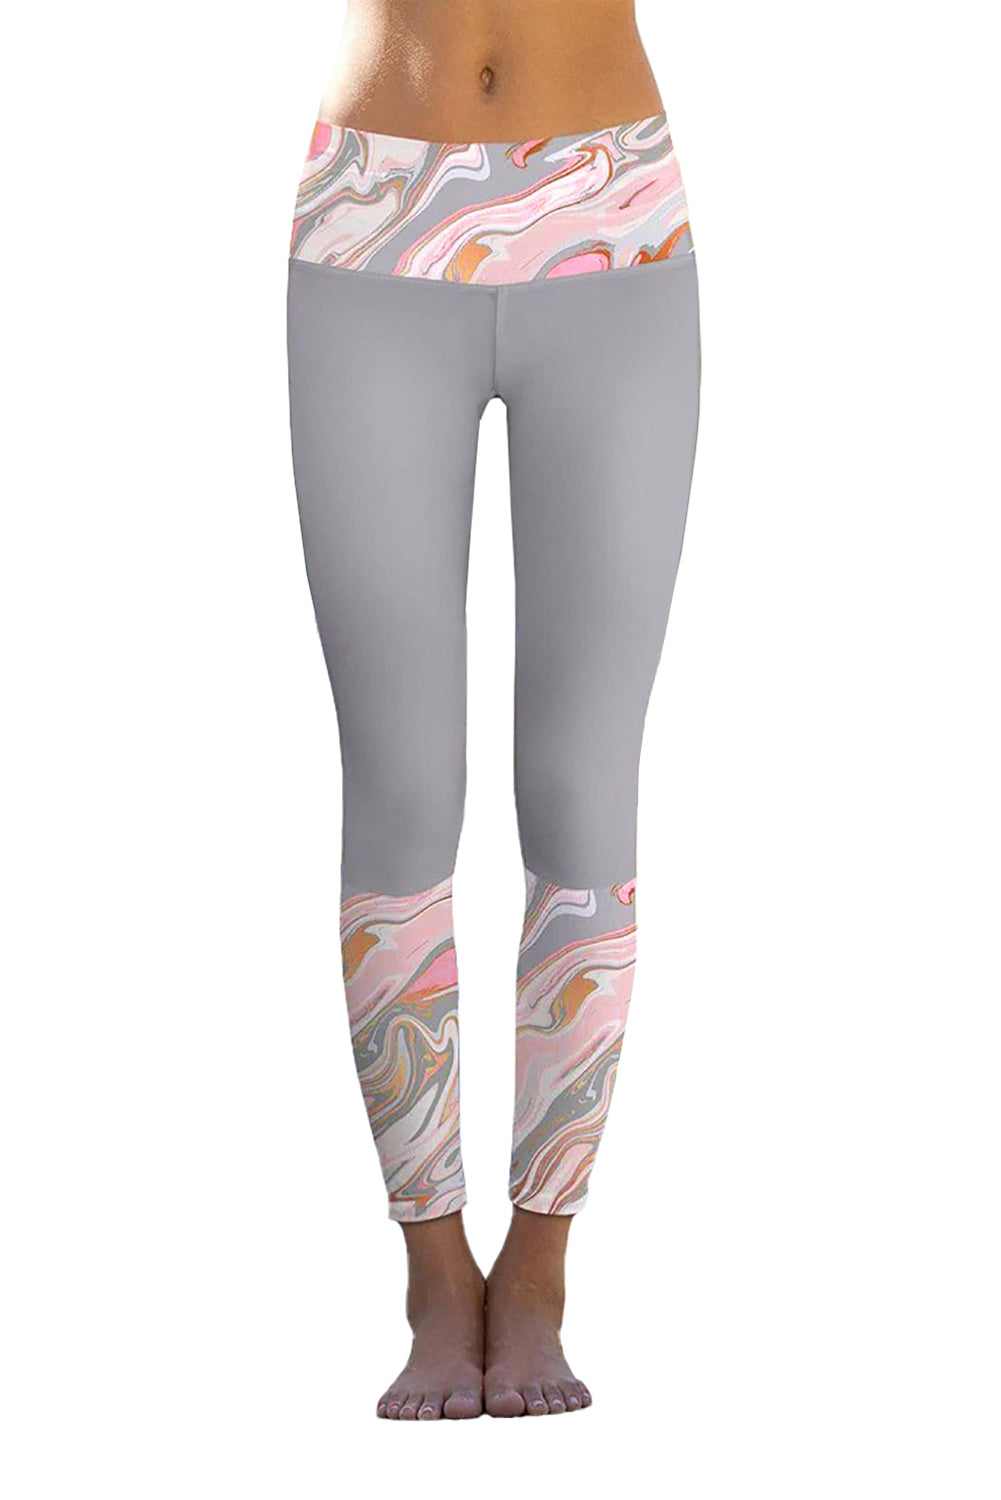 Gray Paisley Printed Details Leggings Yoga Pants